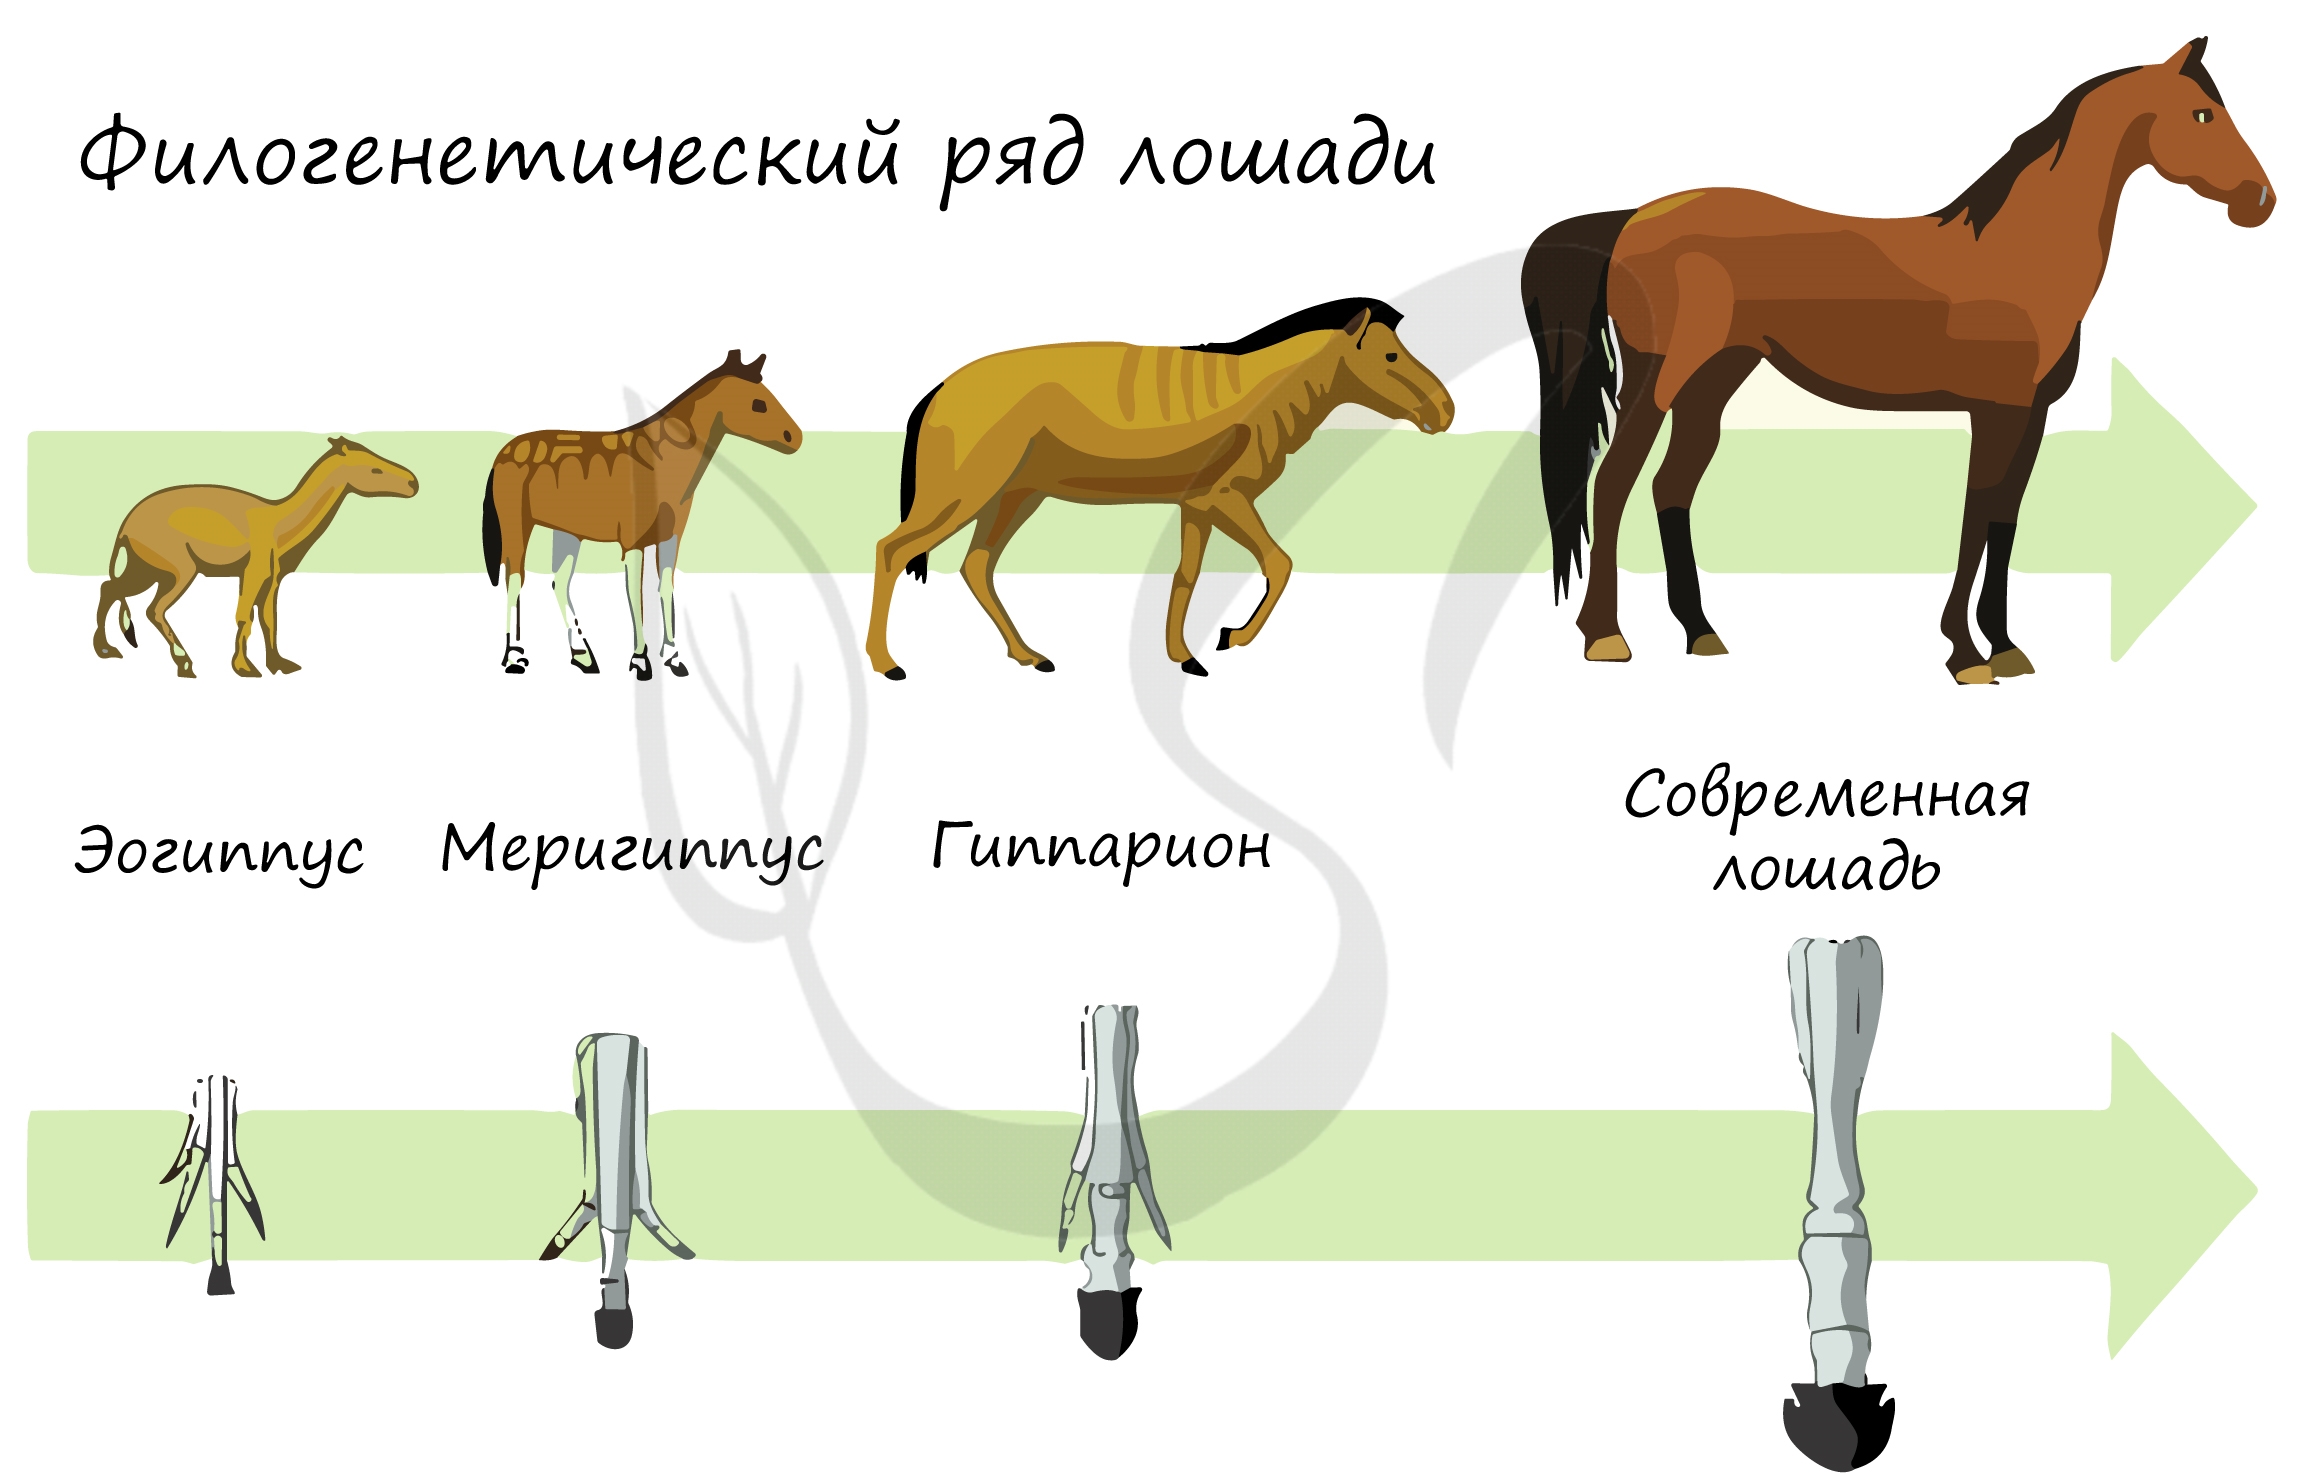 Как меняется строение. Филогенетический ряд конечностей лошади. Эволюция филогенетический ряд лошади. Филоґенетический РЧД лошади. Филогенетические ряды лошади описал.